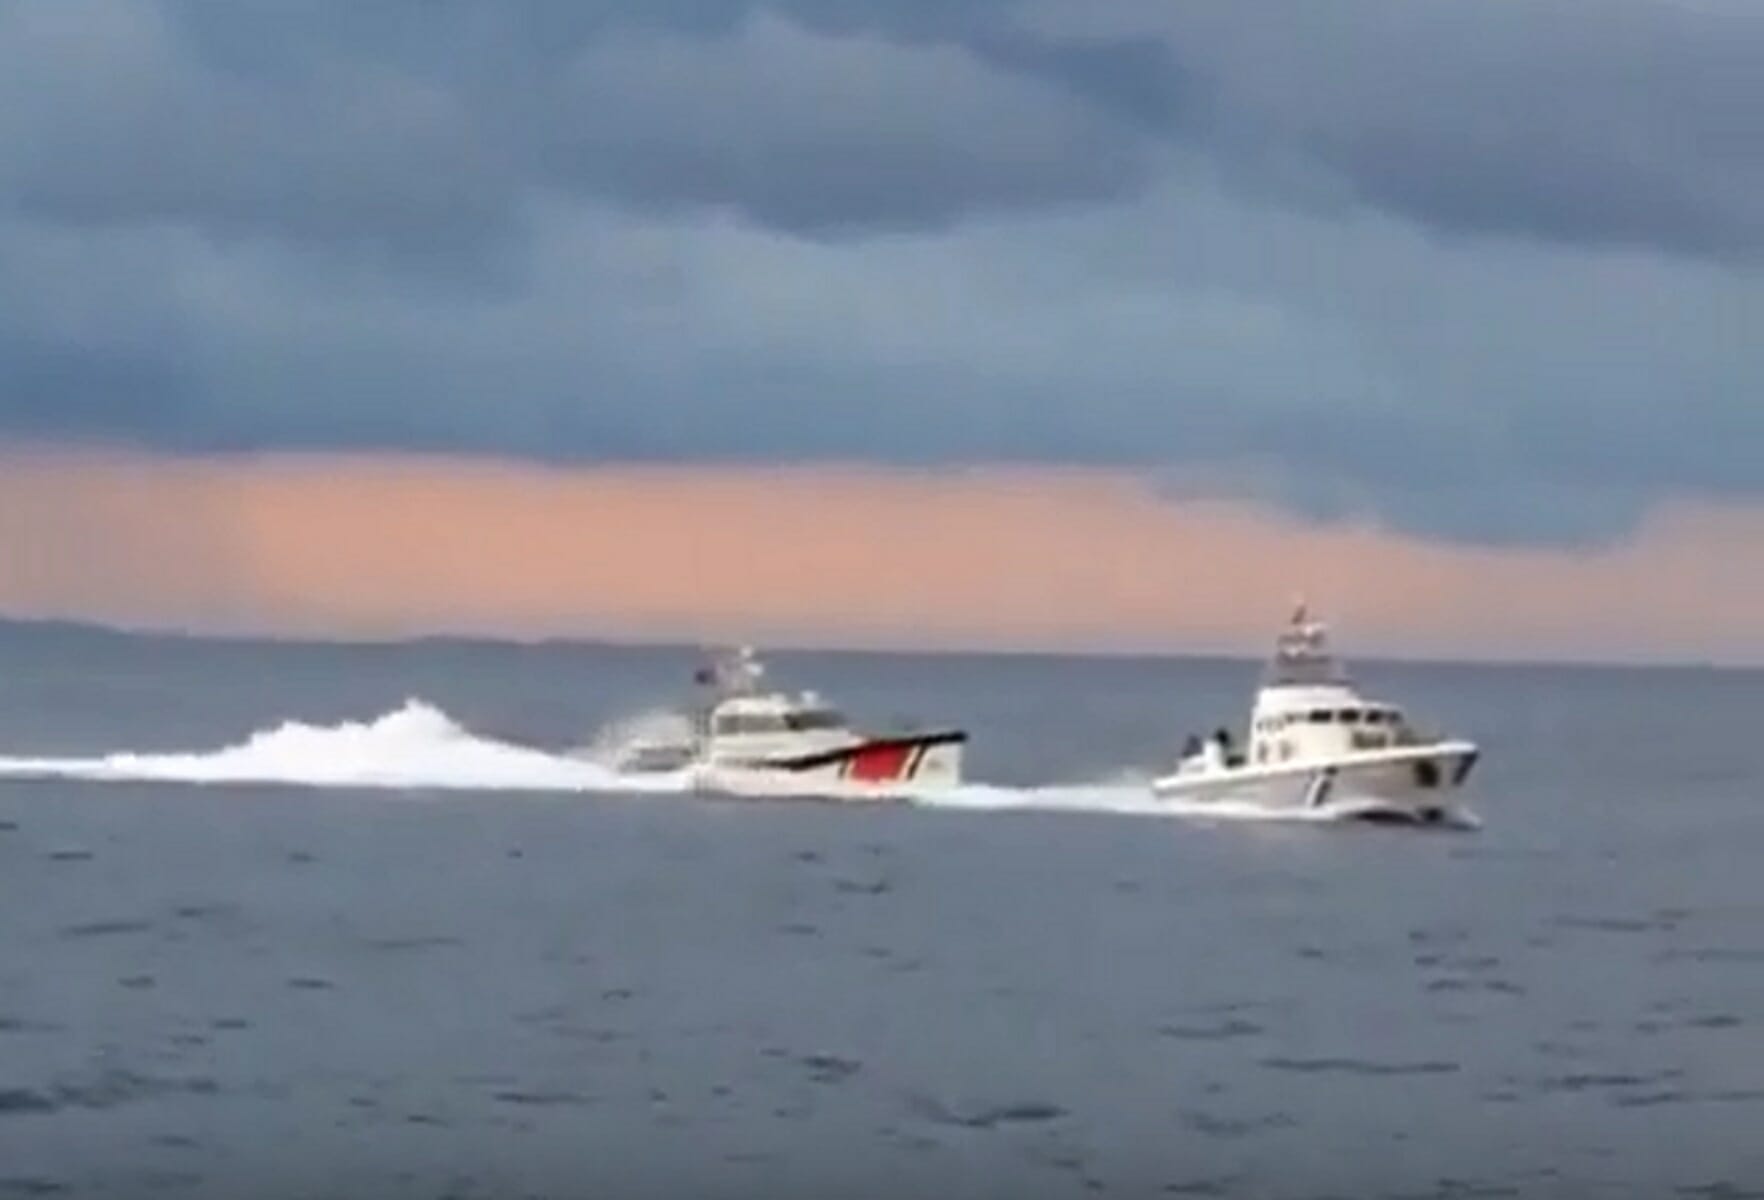 Νέο video με την παρενόχληση ελληνικού σκάφους από τουρκική ακταιωρό